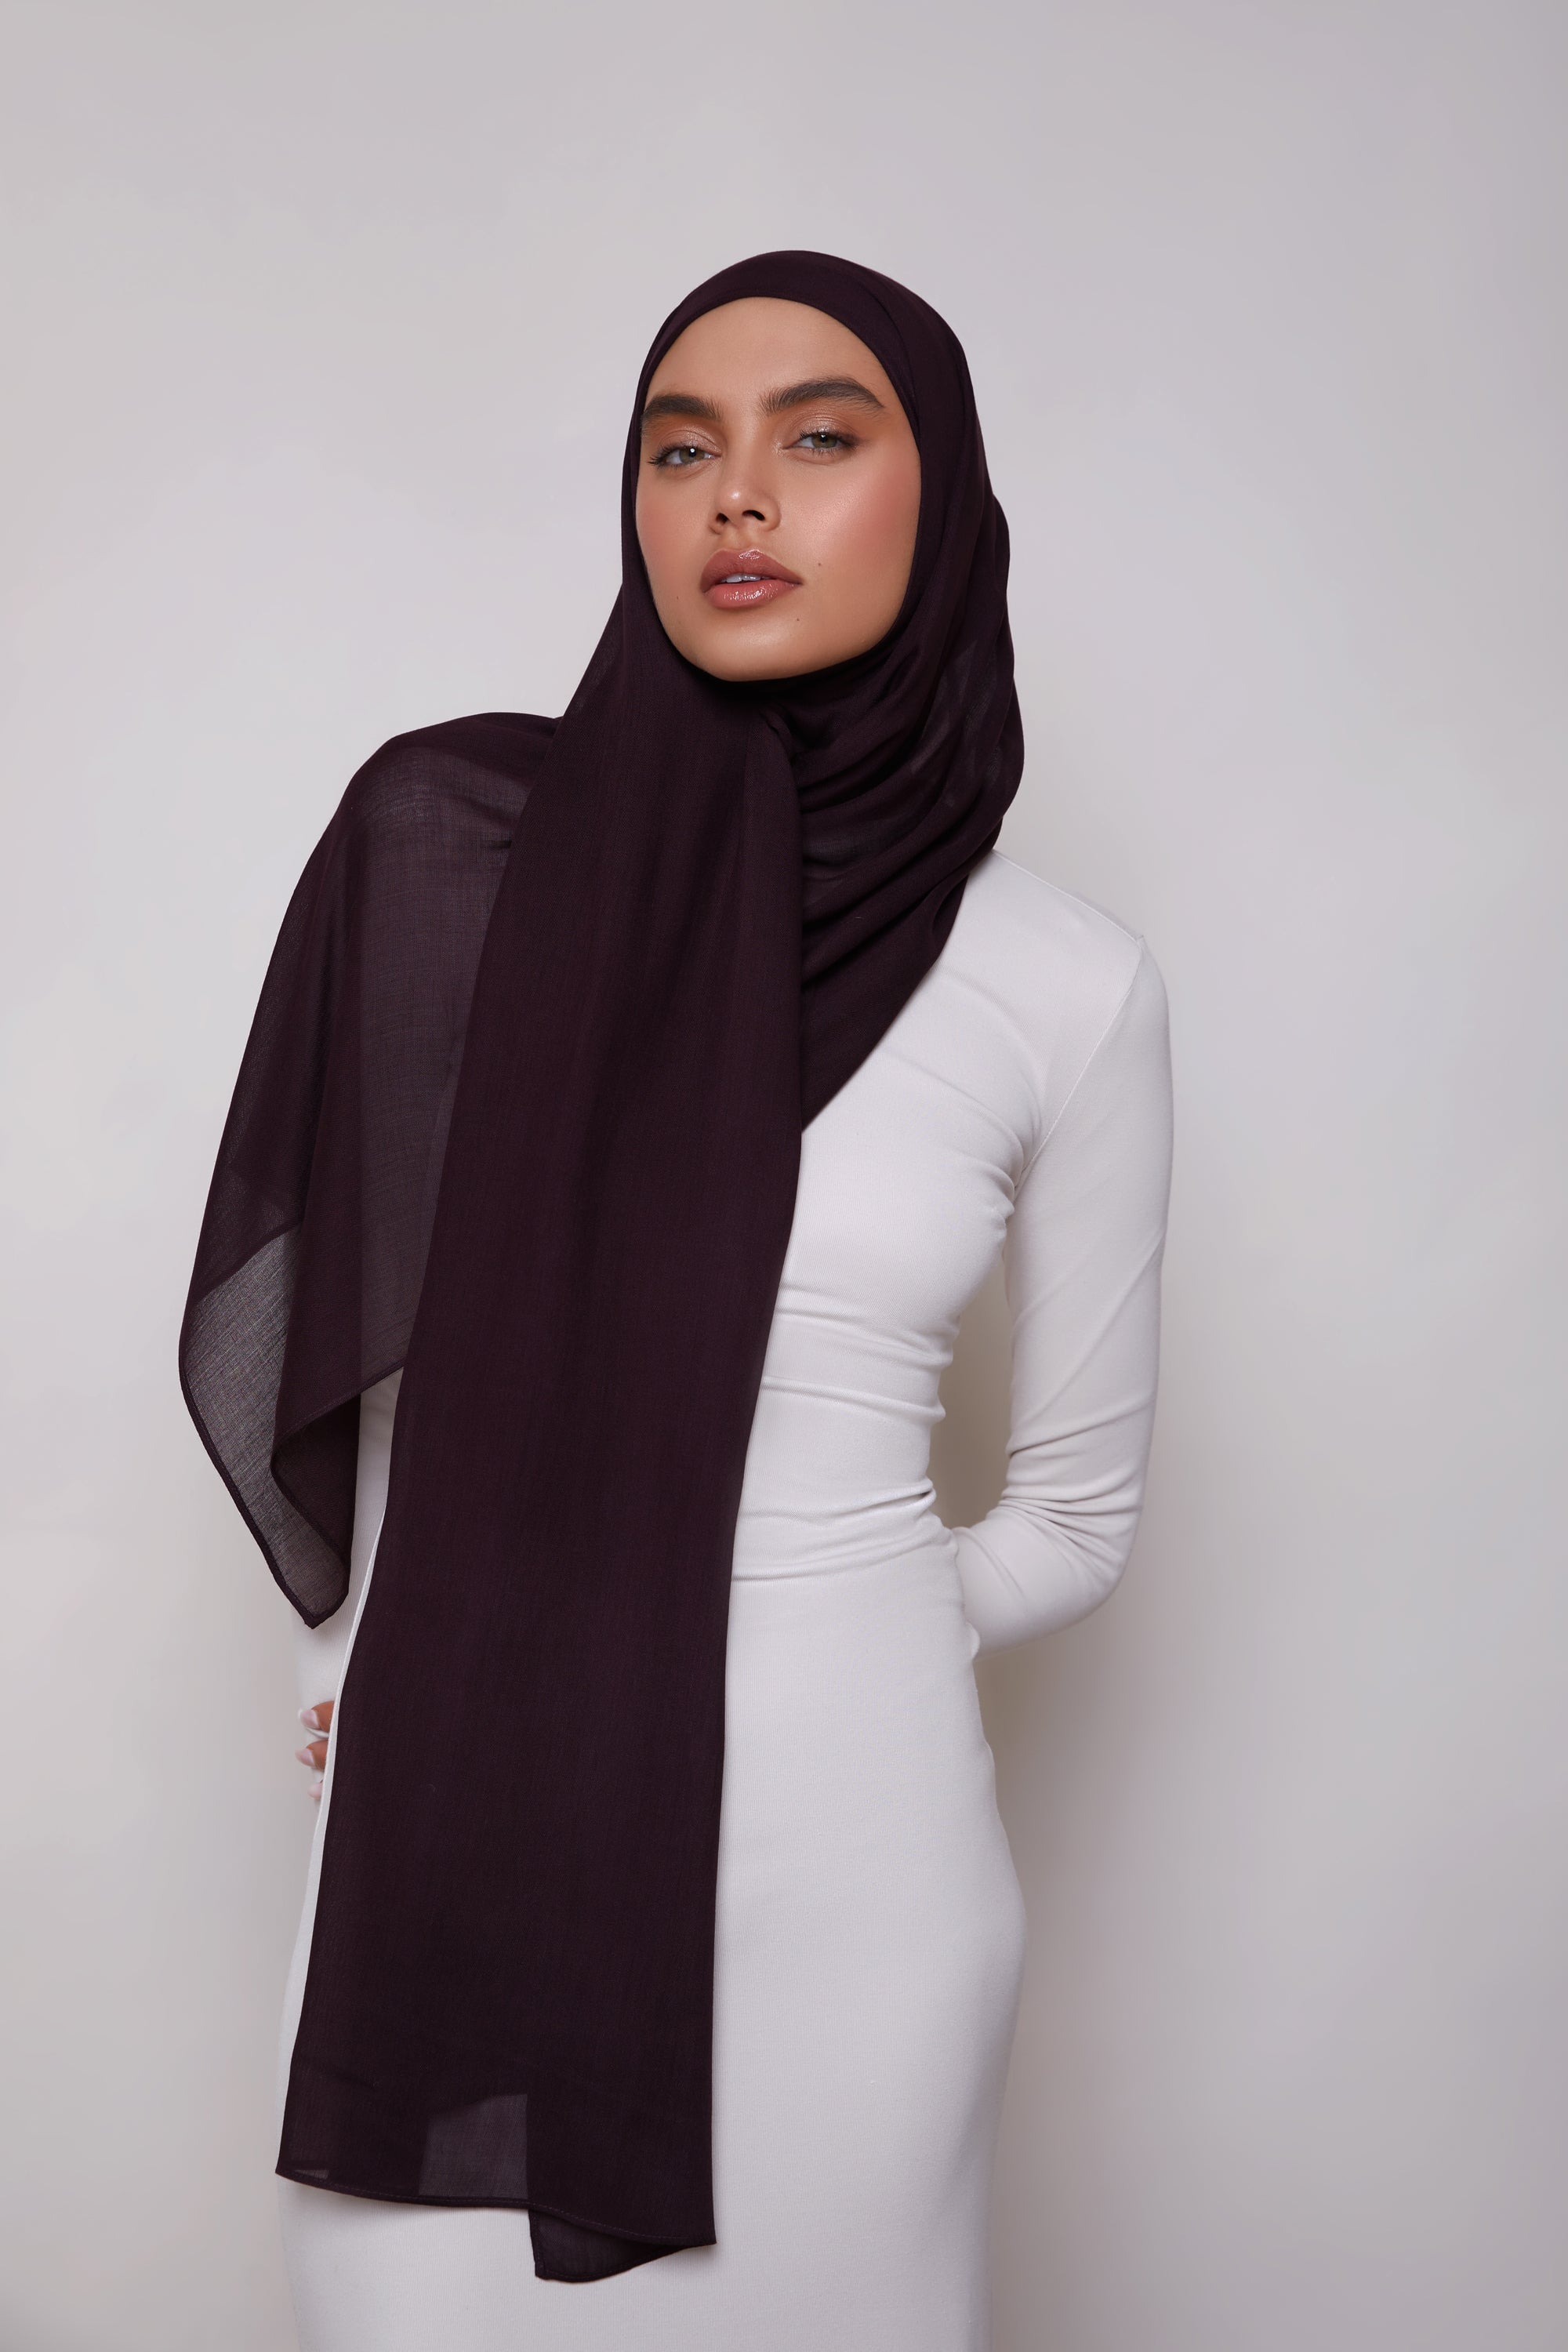 Modal Hijab - Chocolate Plum Veiled 